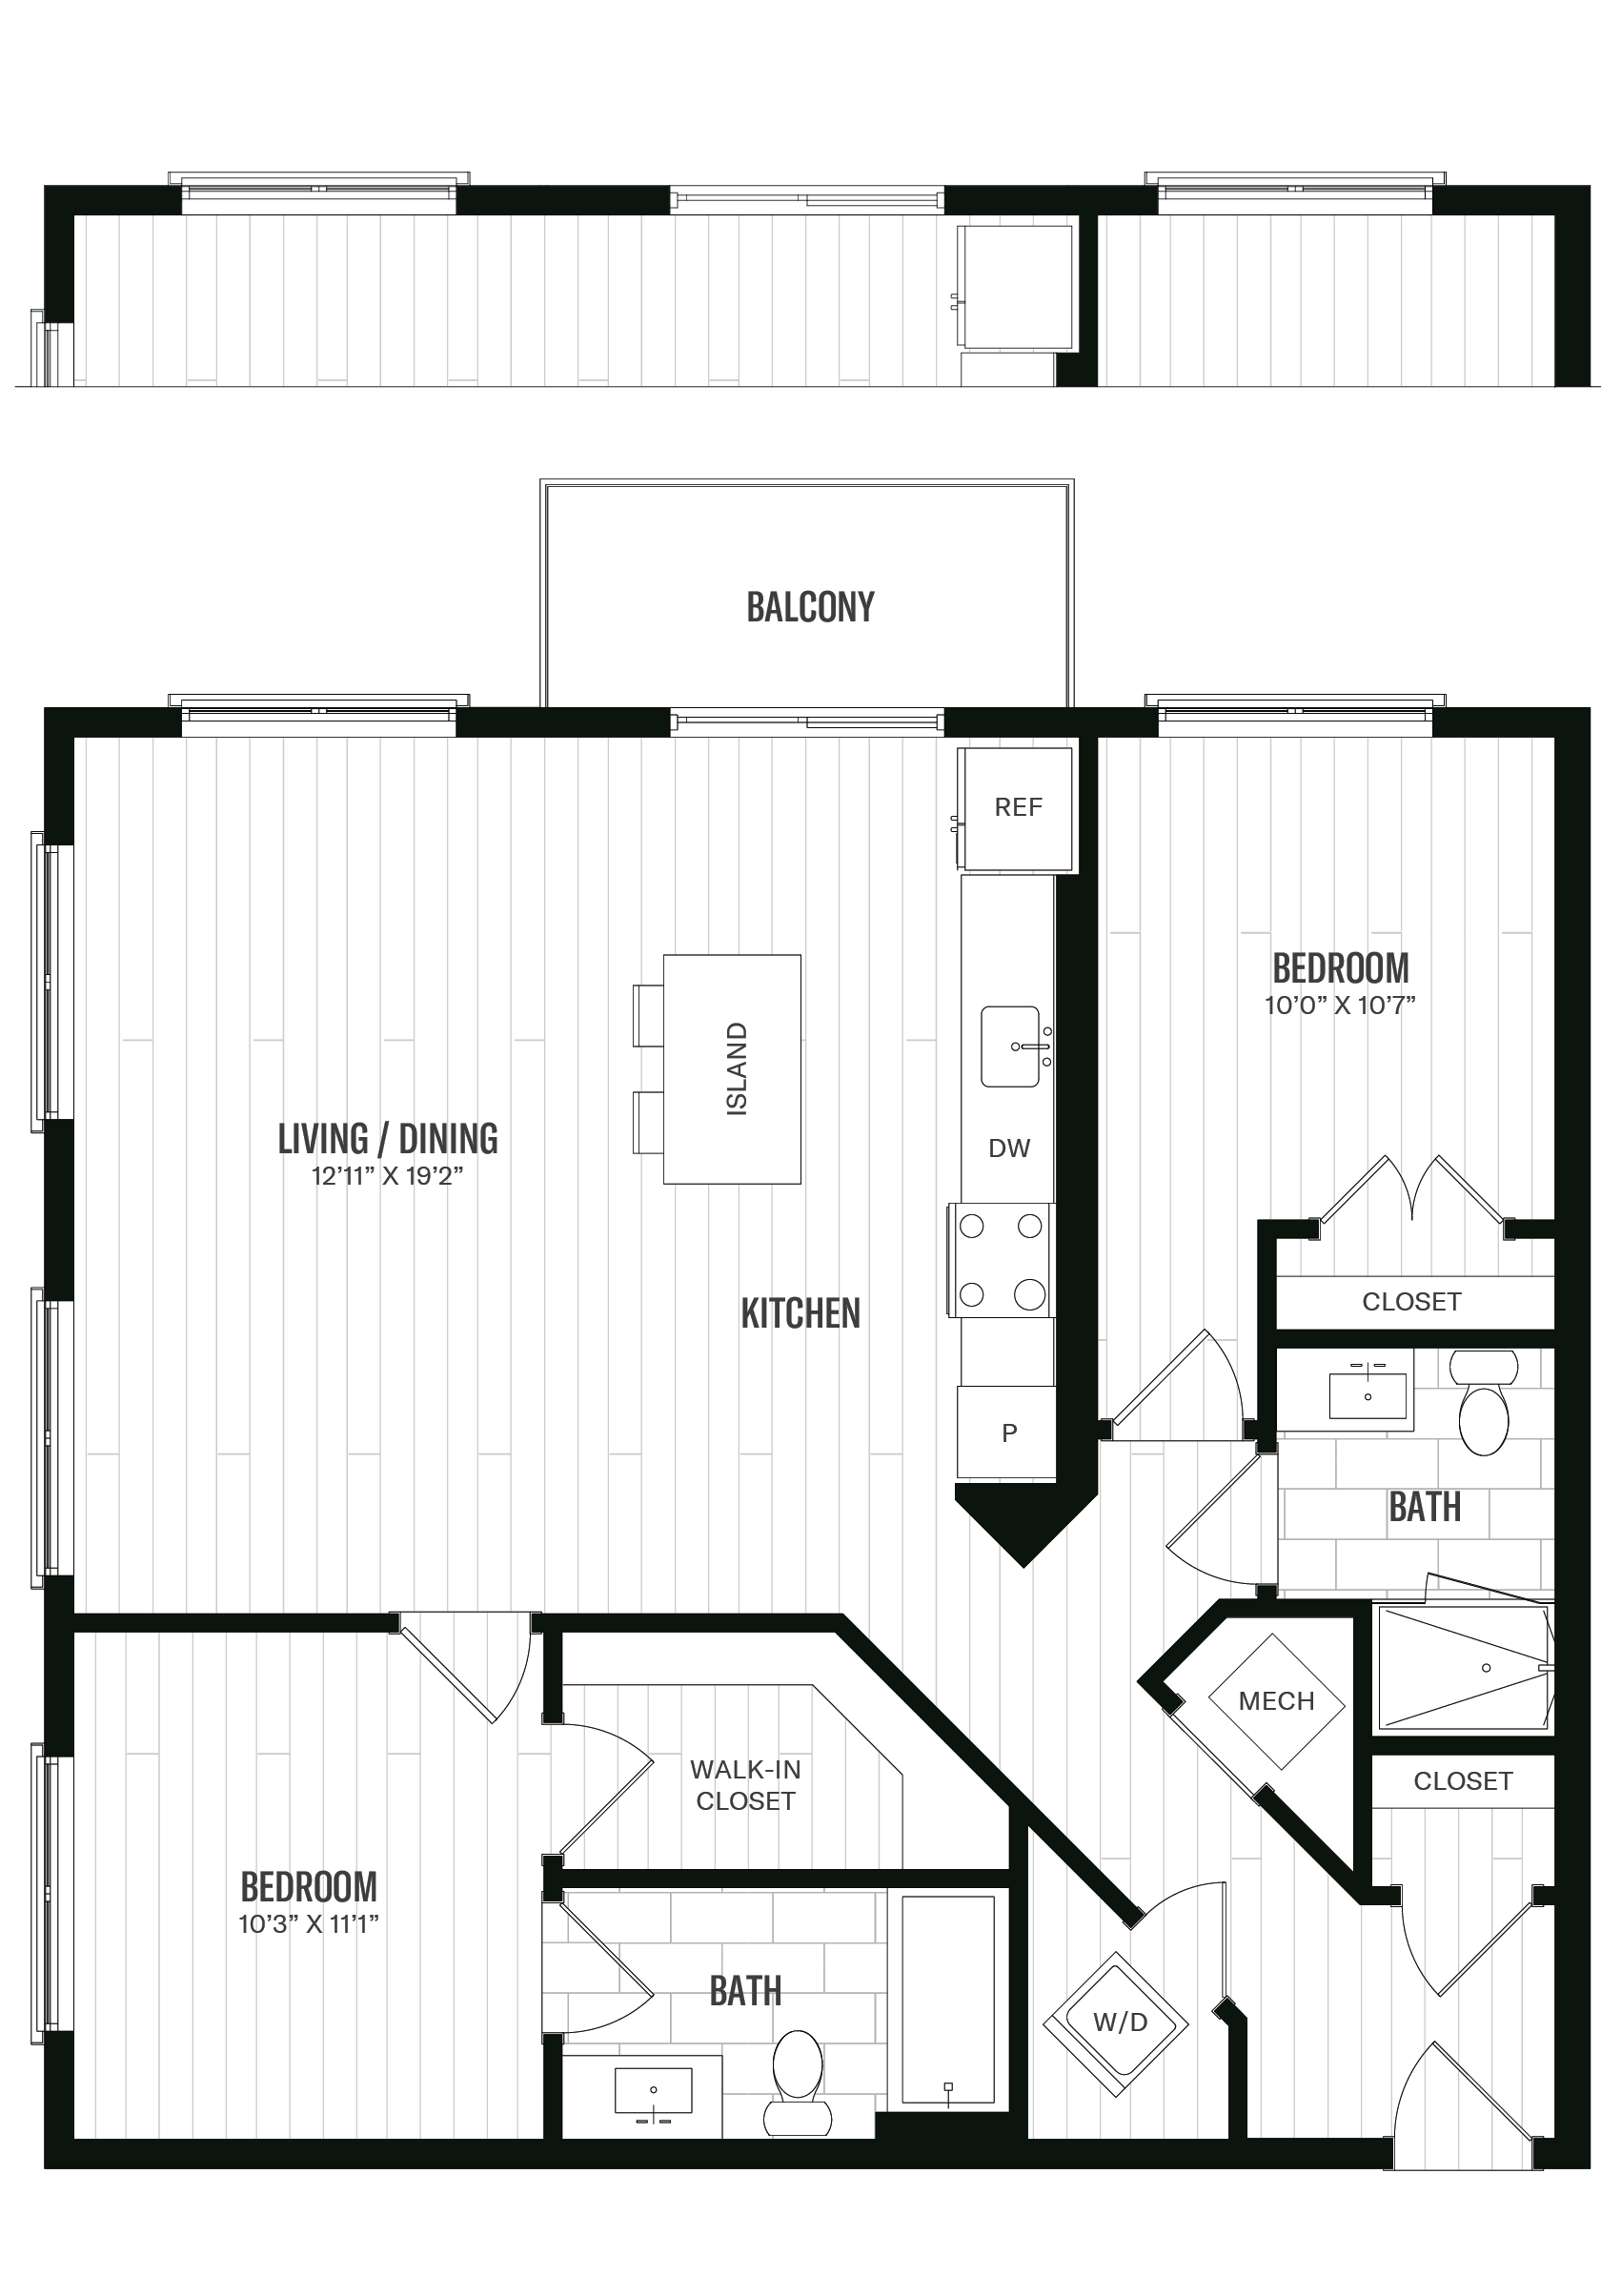 Floorplan image of unit 436